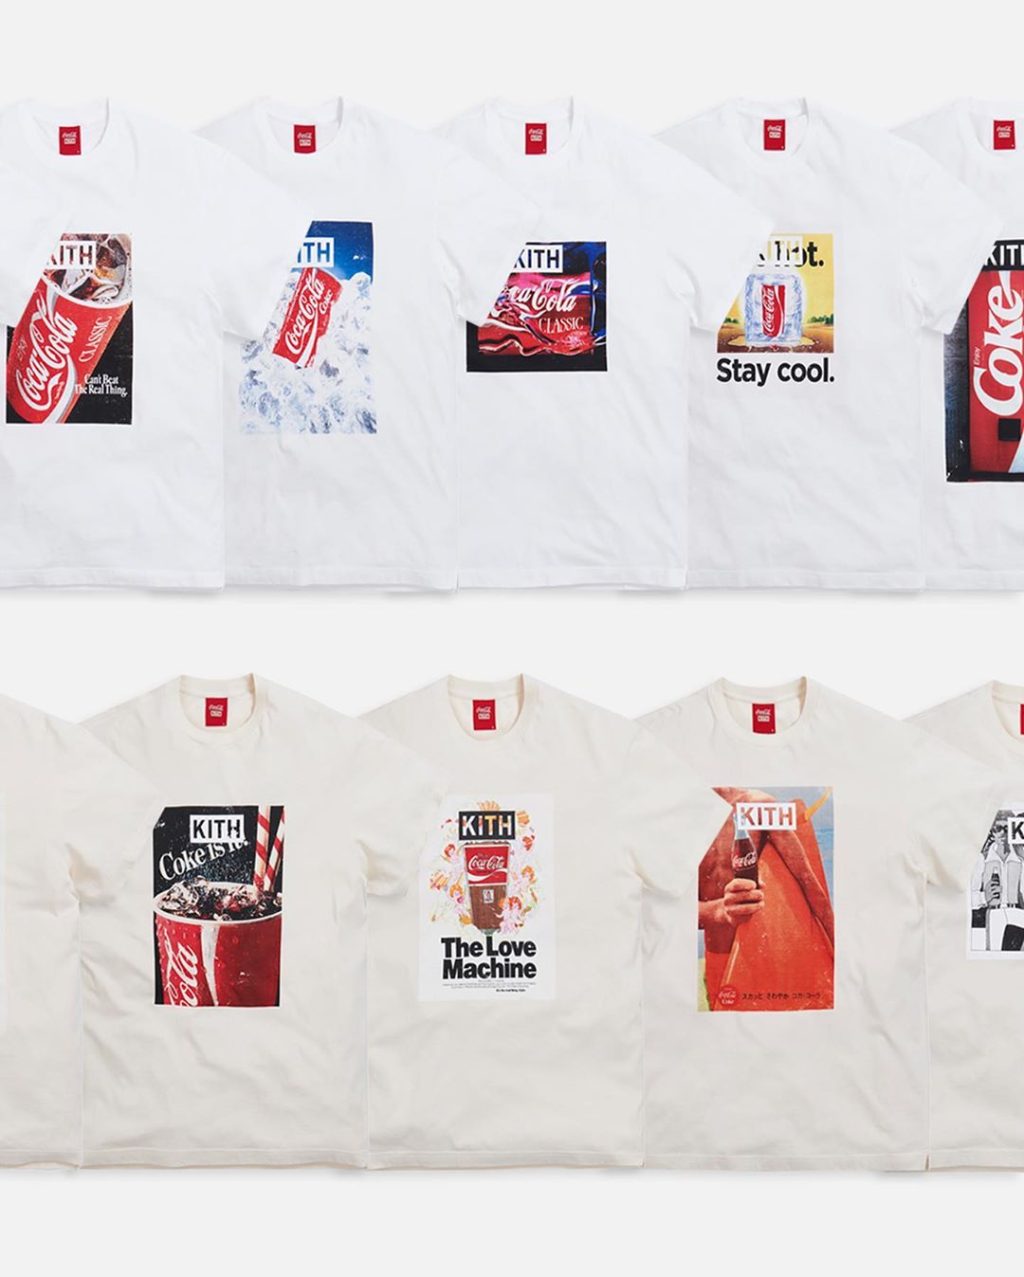 kith-coca-cola-5th-collaboration-release-20200815